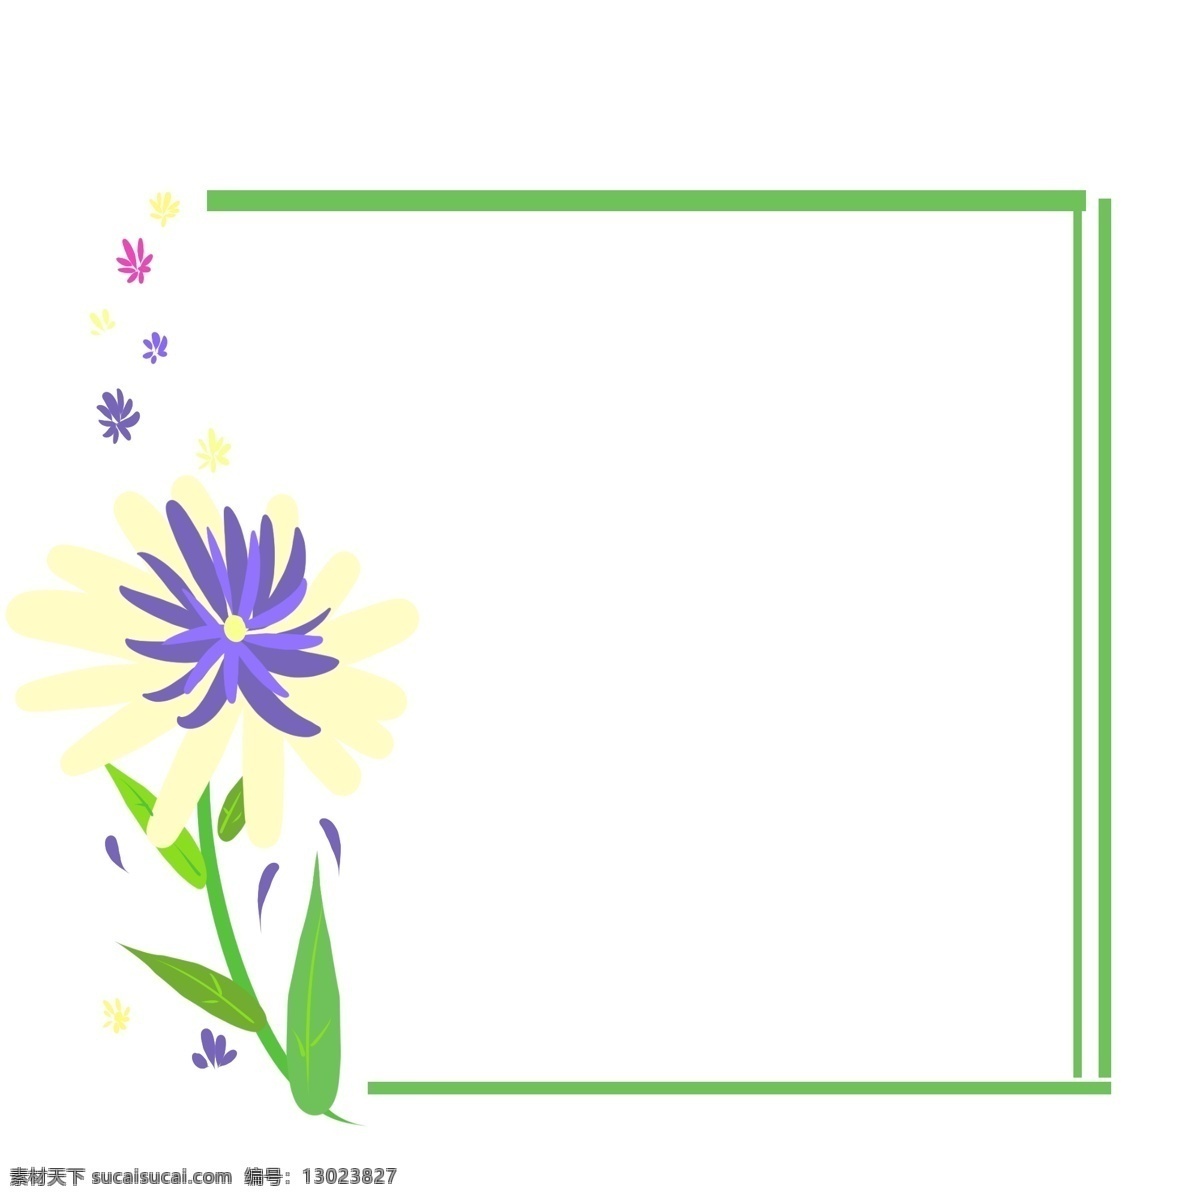 黄色 花朵 方形 边框 黄色的花朵 花枝边框 紫色花卉 花卉装饰边框 绿色方形边框 卡通边框 边框装饰